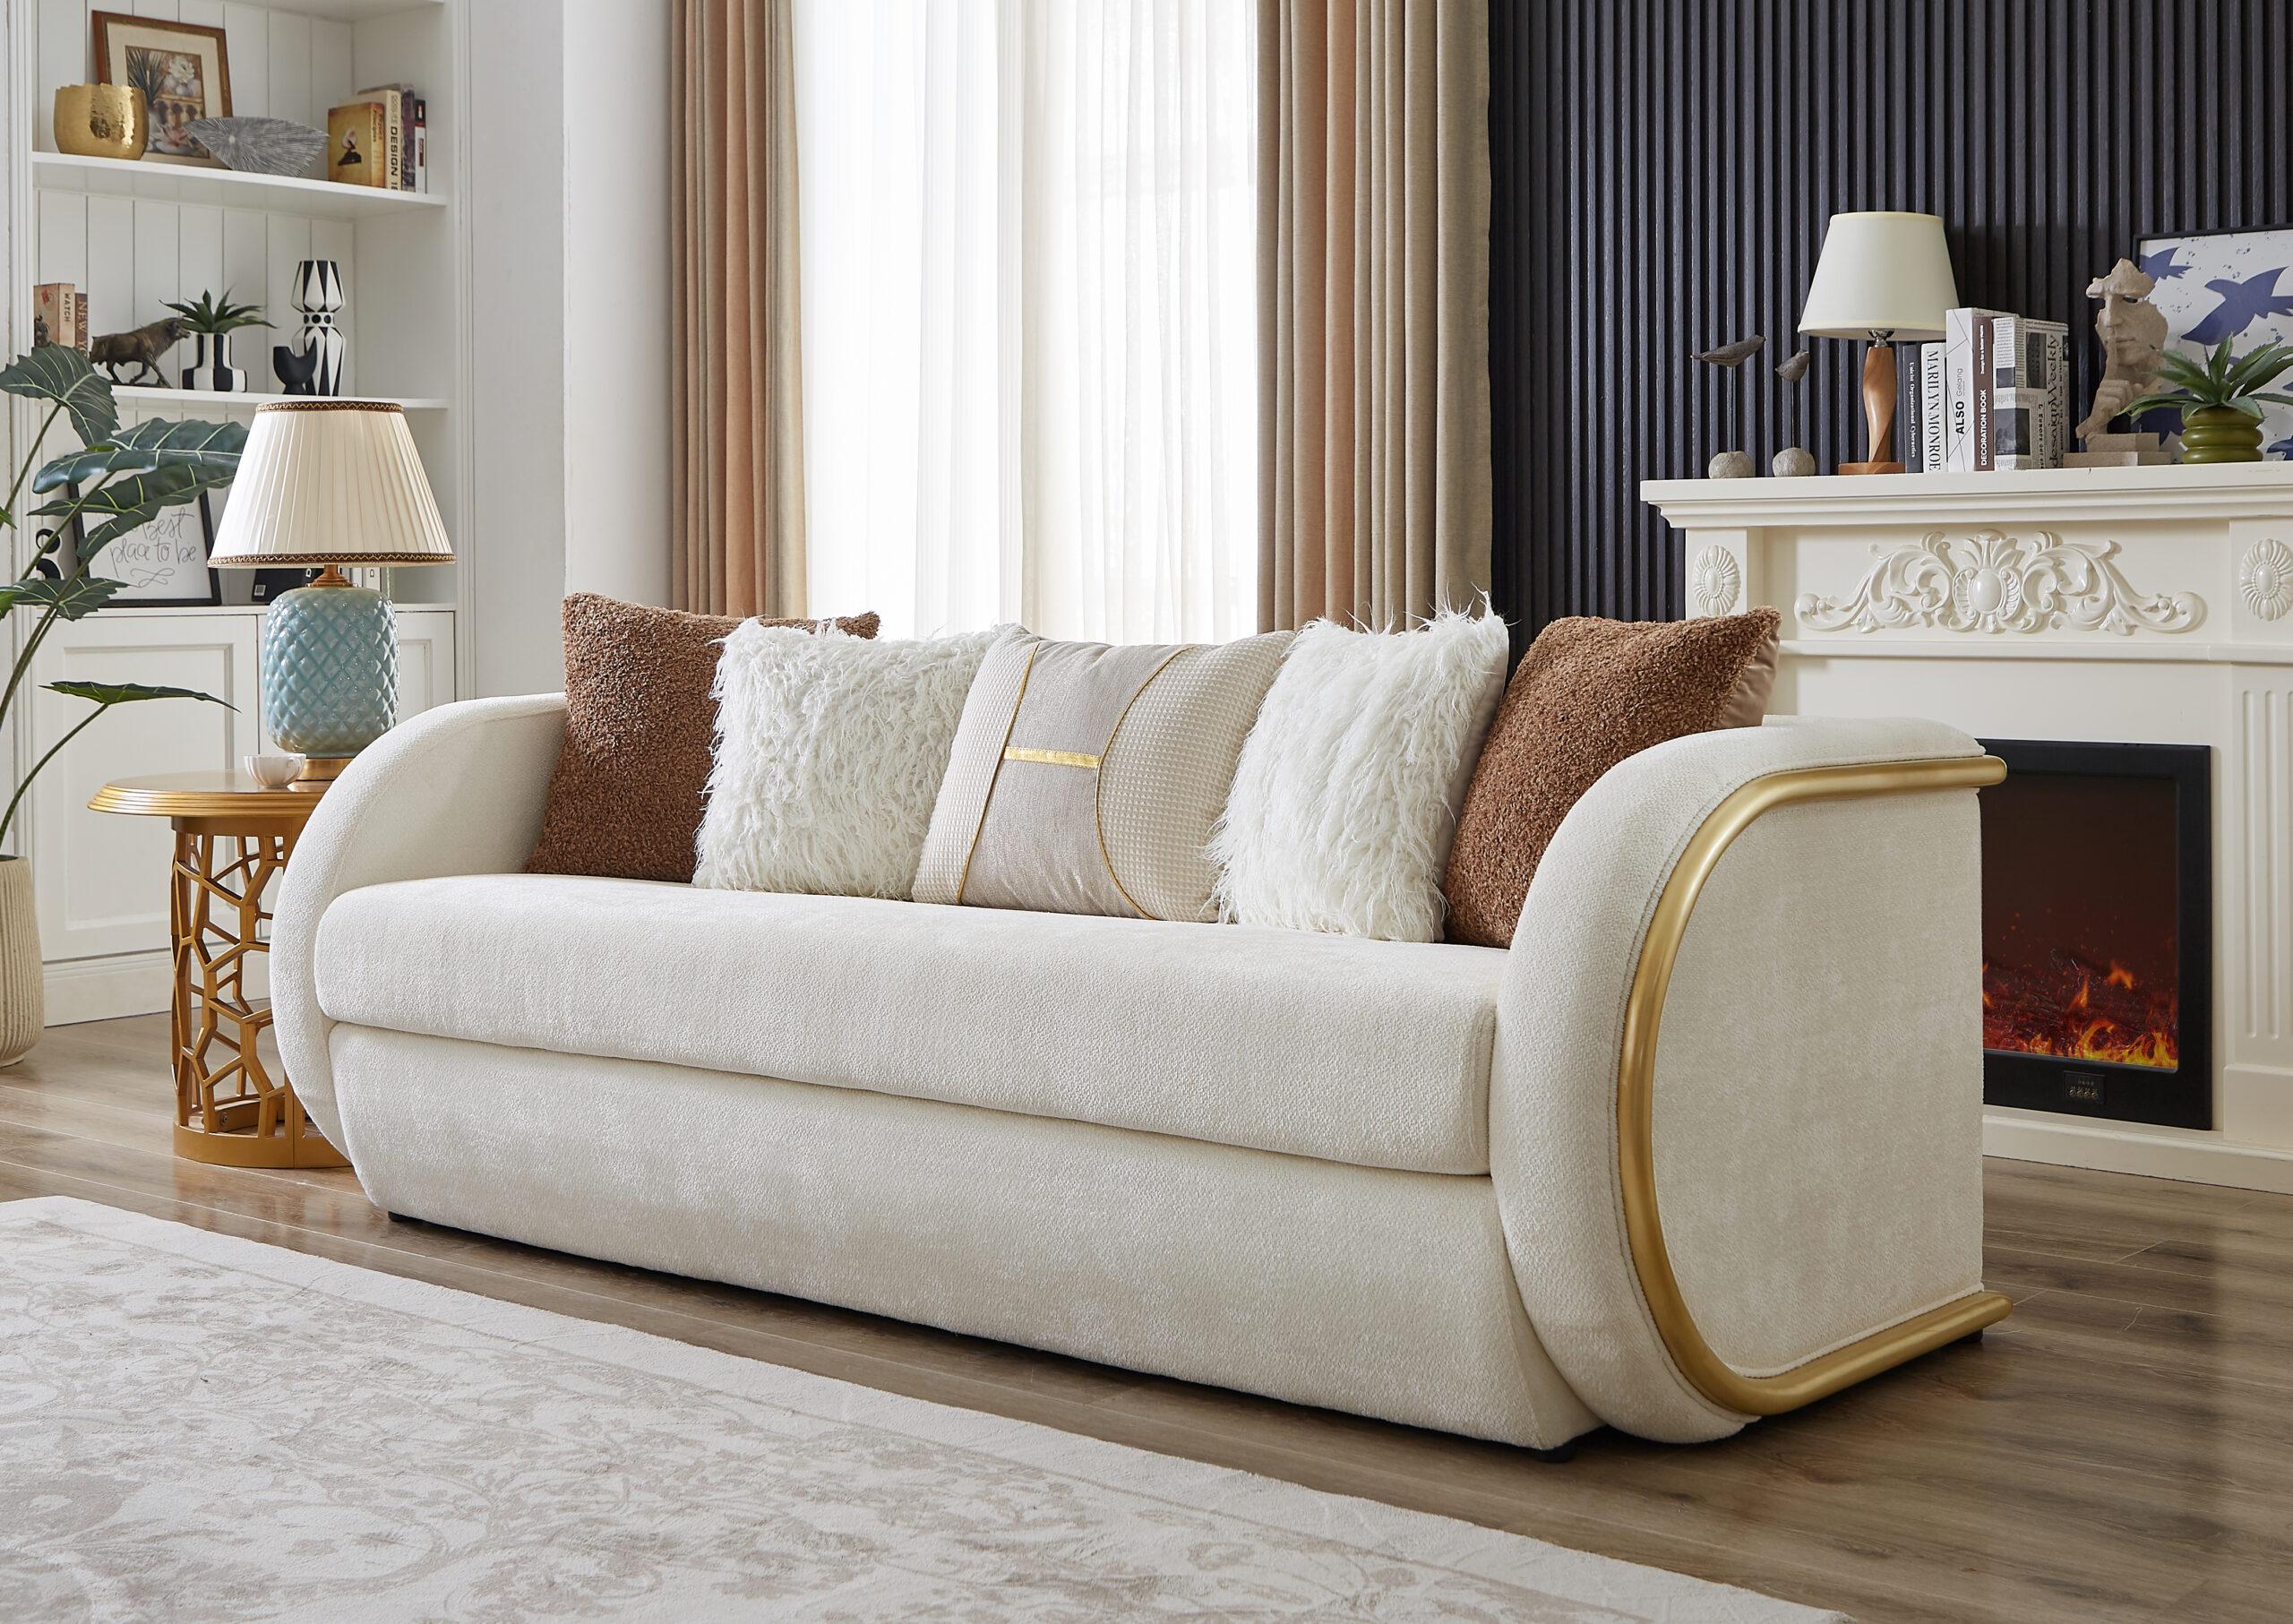 

    
Classic White Wood Living Room Set 3PCS Homey Design HD-9039
